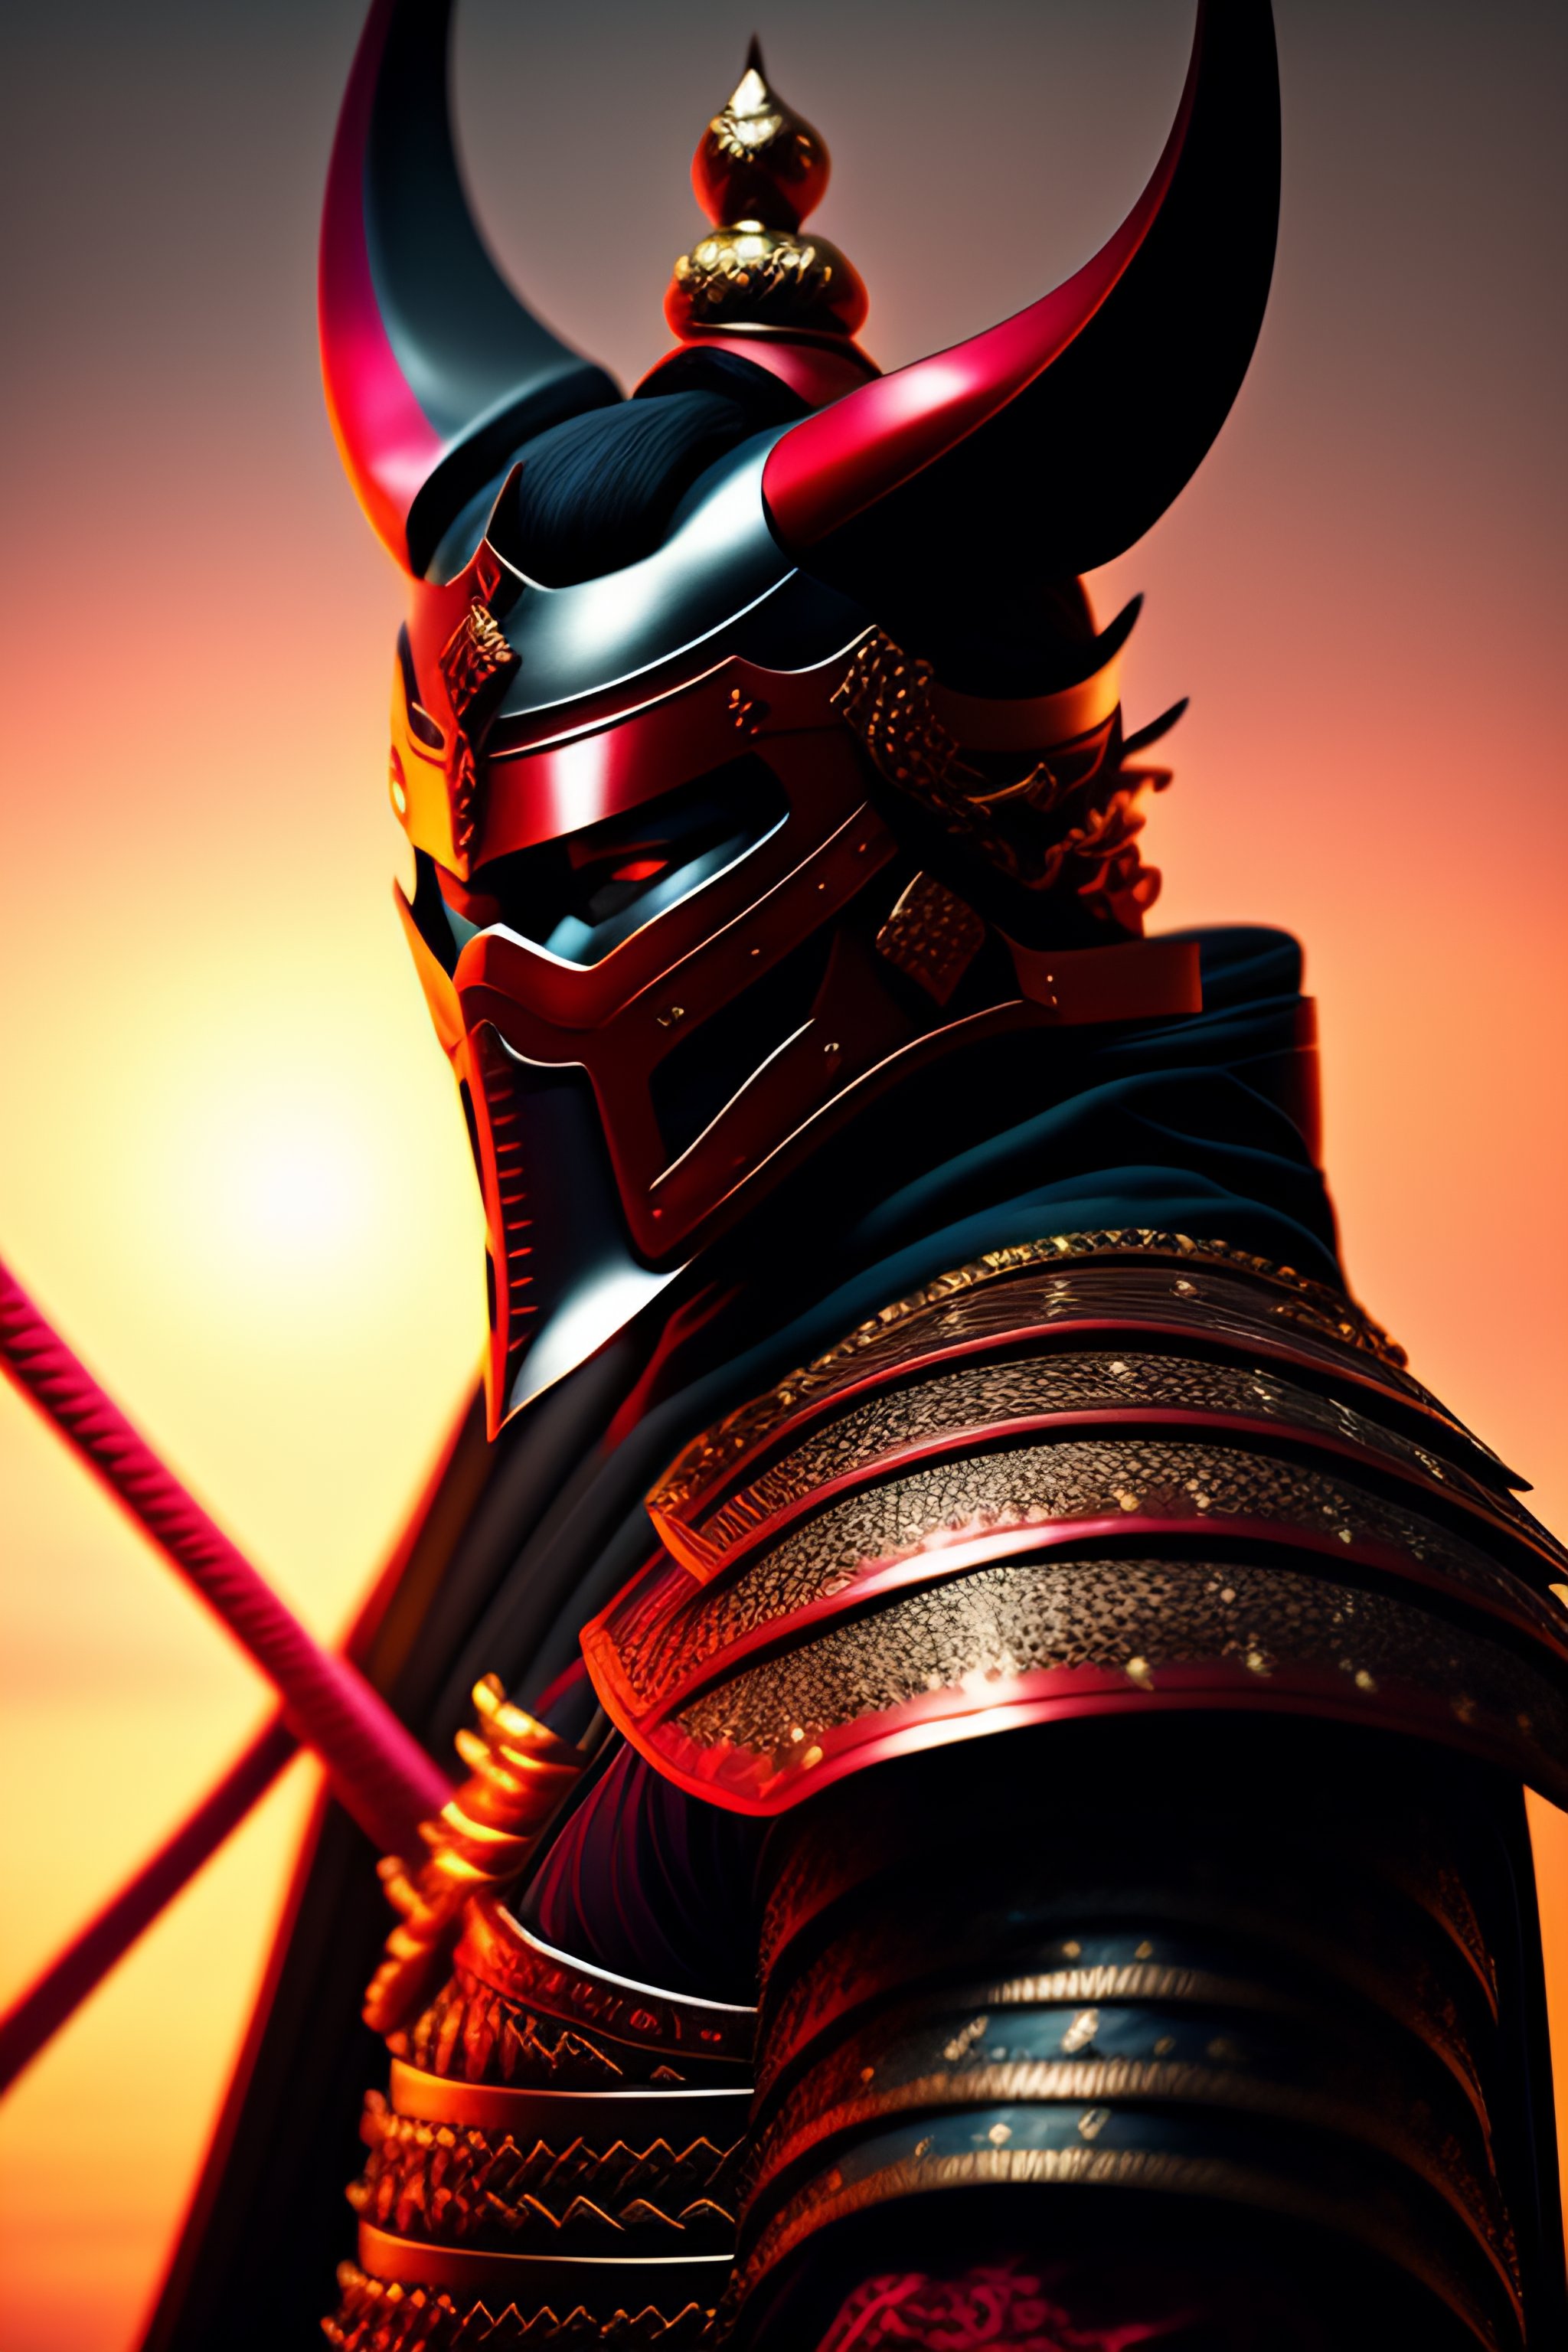 demon samurai armor